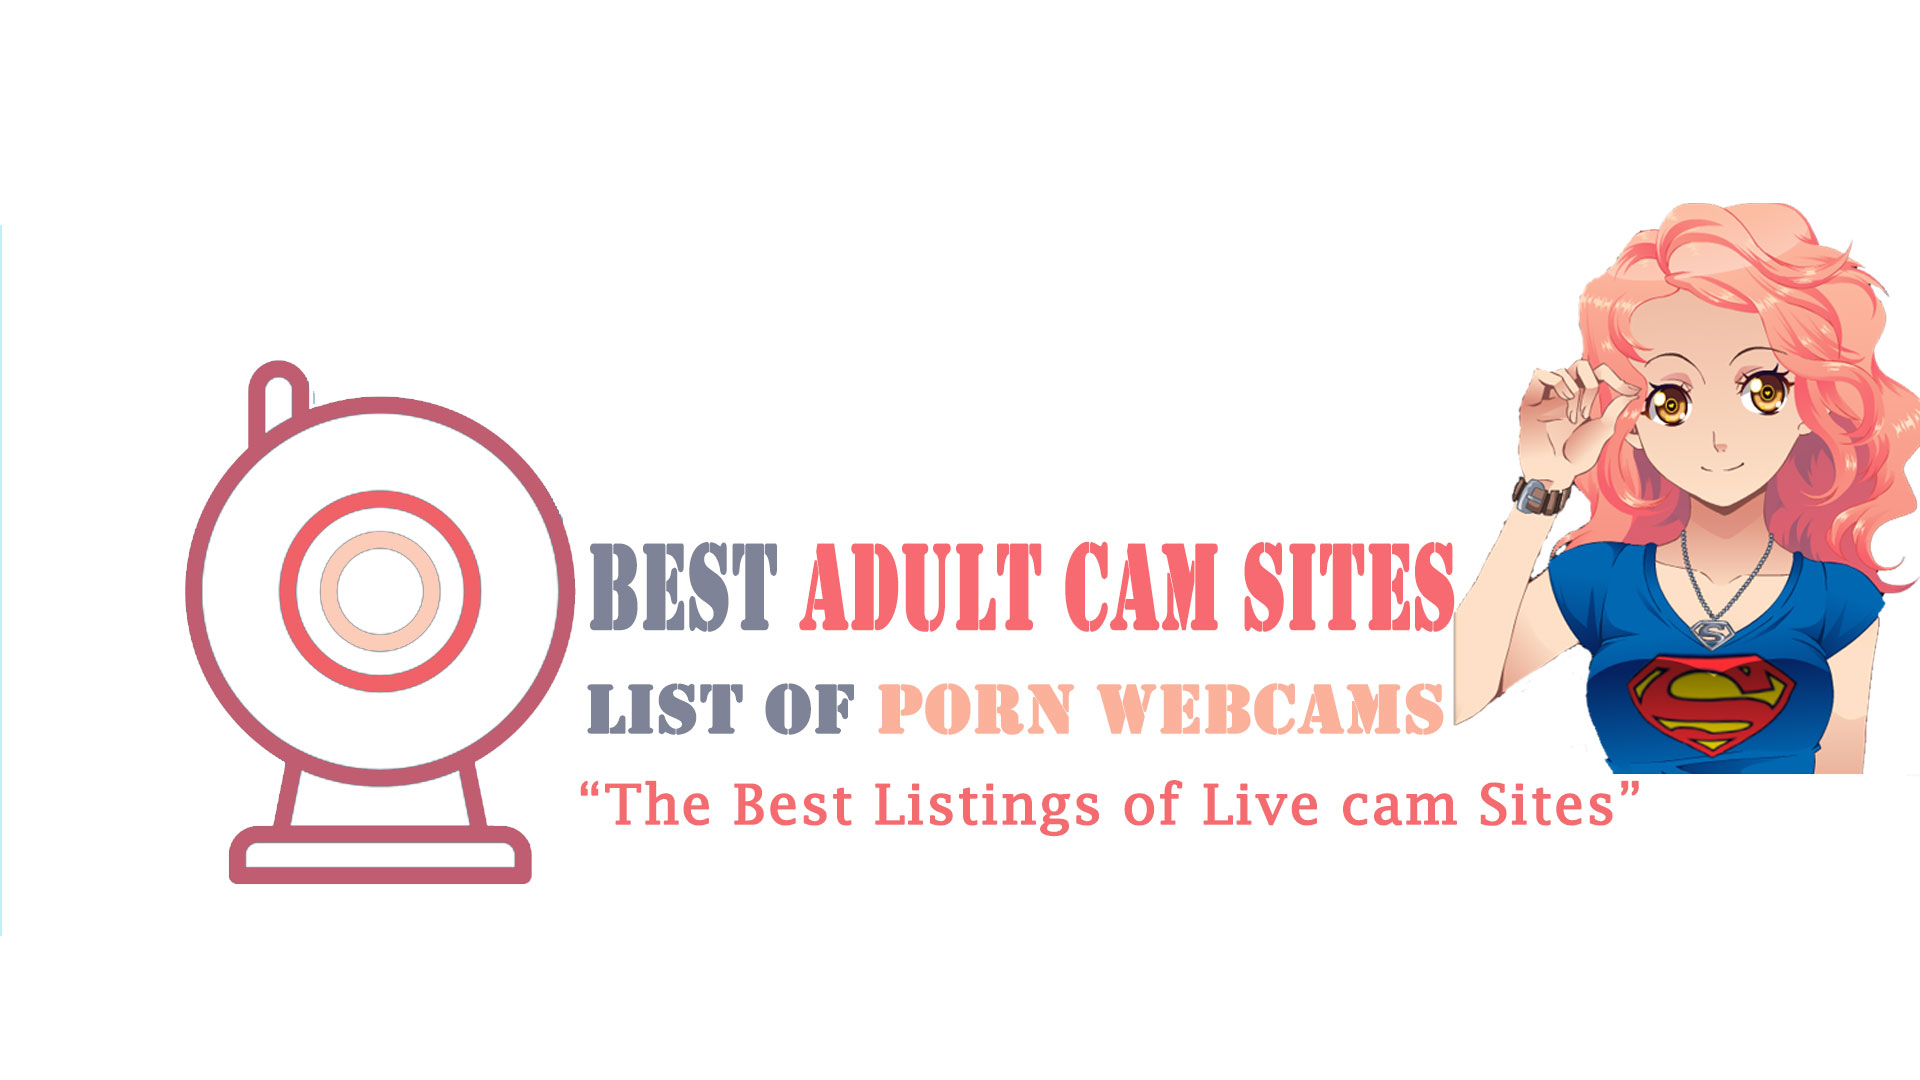 Live cam site